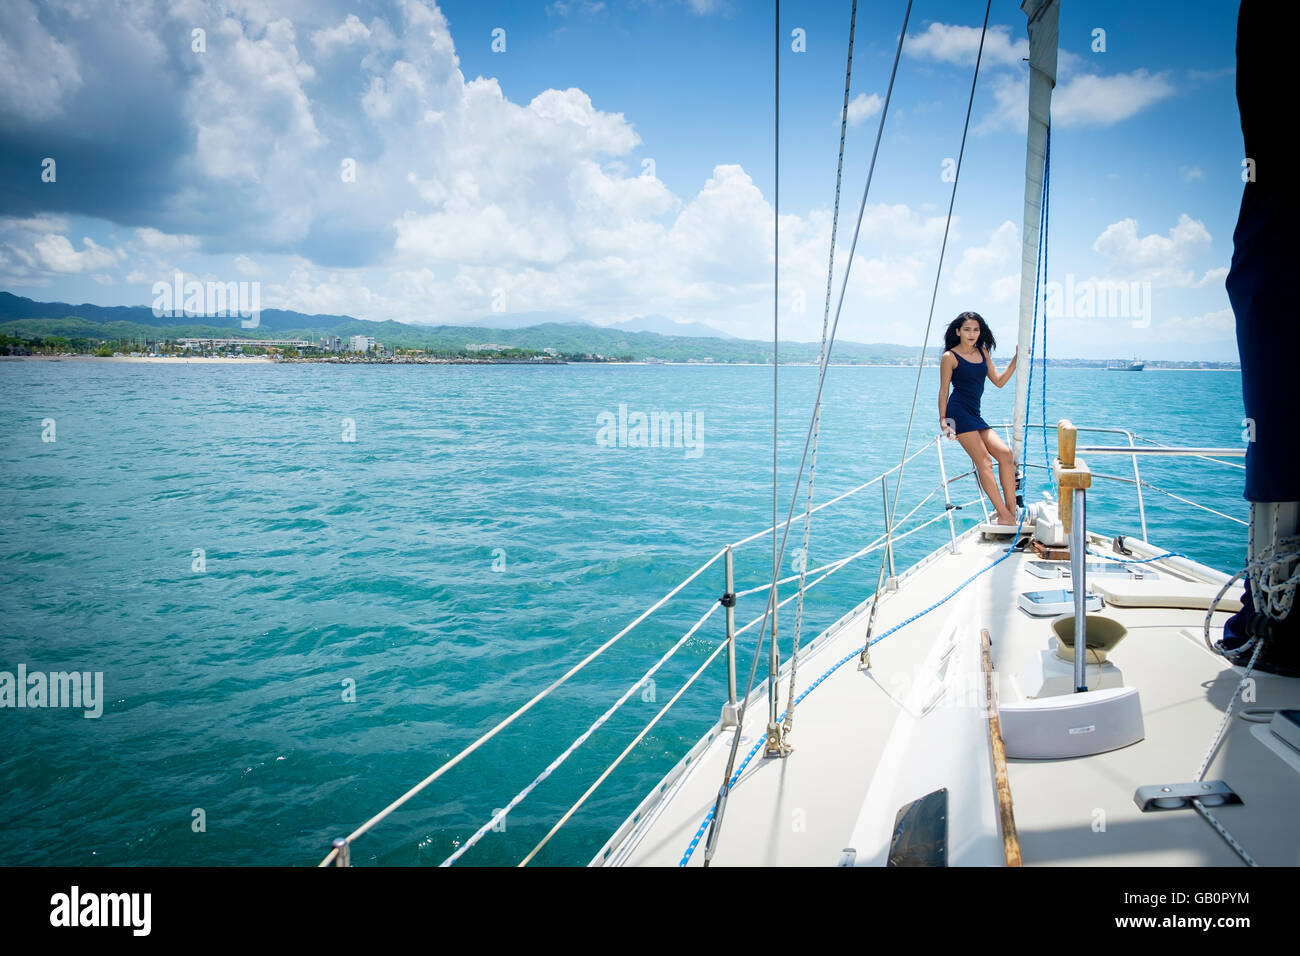 Segelboot-Tour, Riviera Nayarit Mexiko - junge Frau am Bug des Segelboot Stockfoto